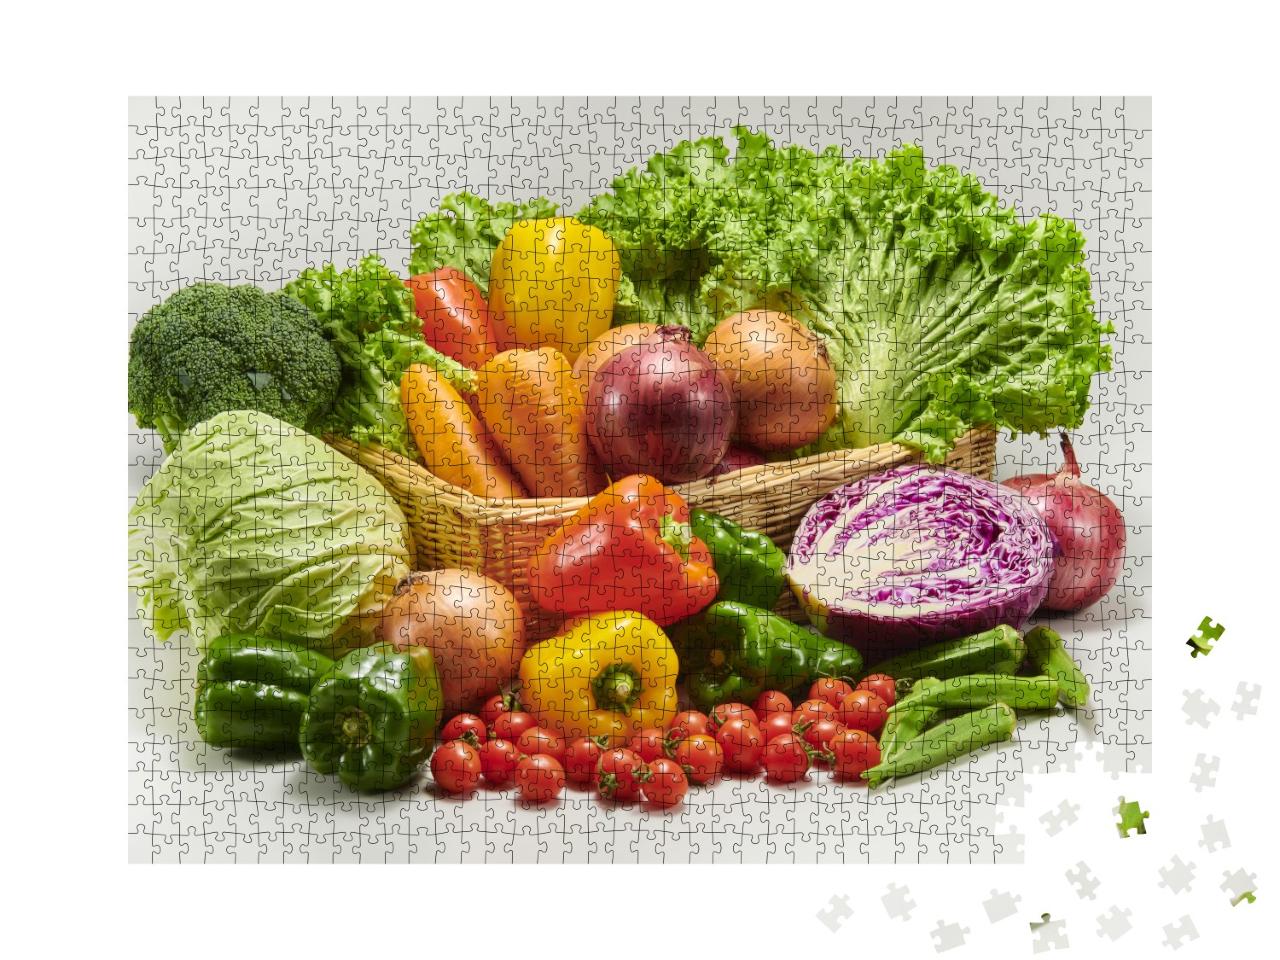 Puzzle de 1000 pièces « Collecte de délicieux légumes récoltés dans les champs »